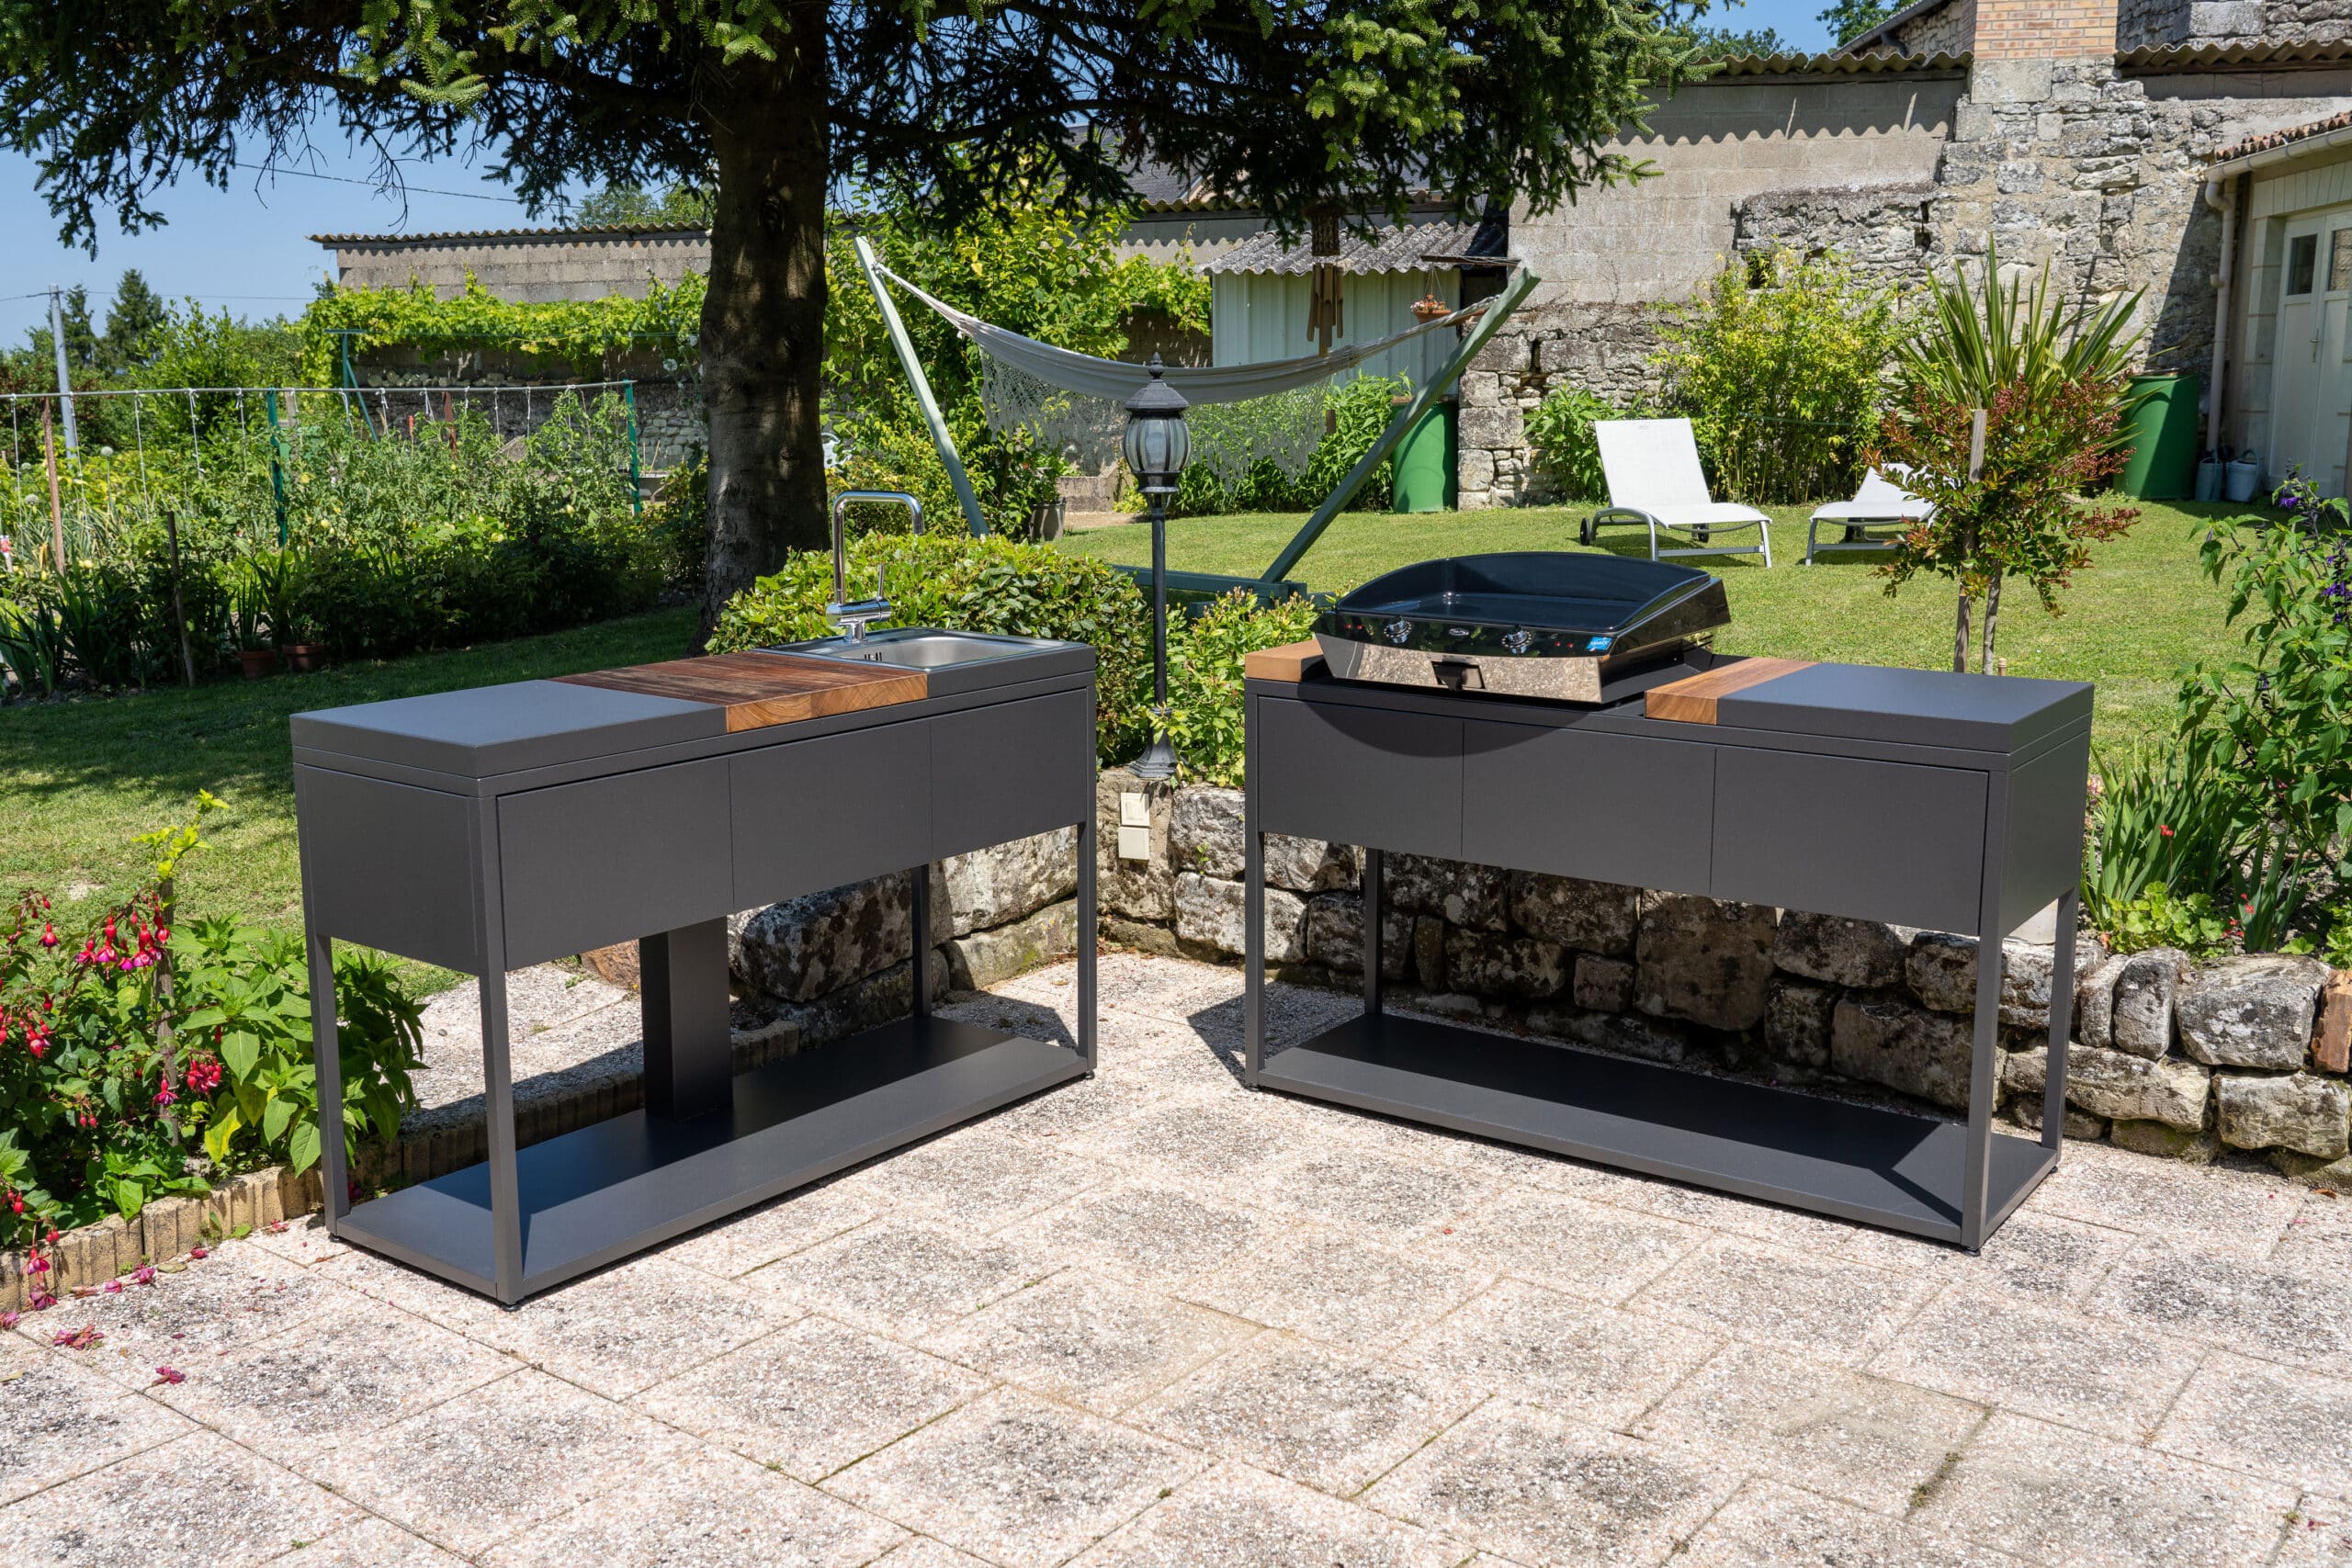 Deux modules de cuisine extérieure Soleil Carré placés sur une belle terrasse au soleil. Disponible chez Inox Passion